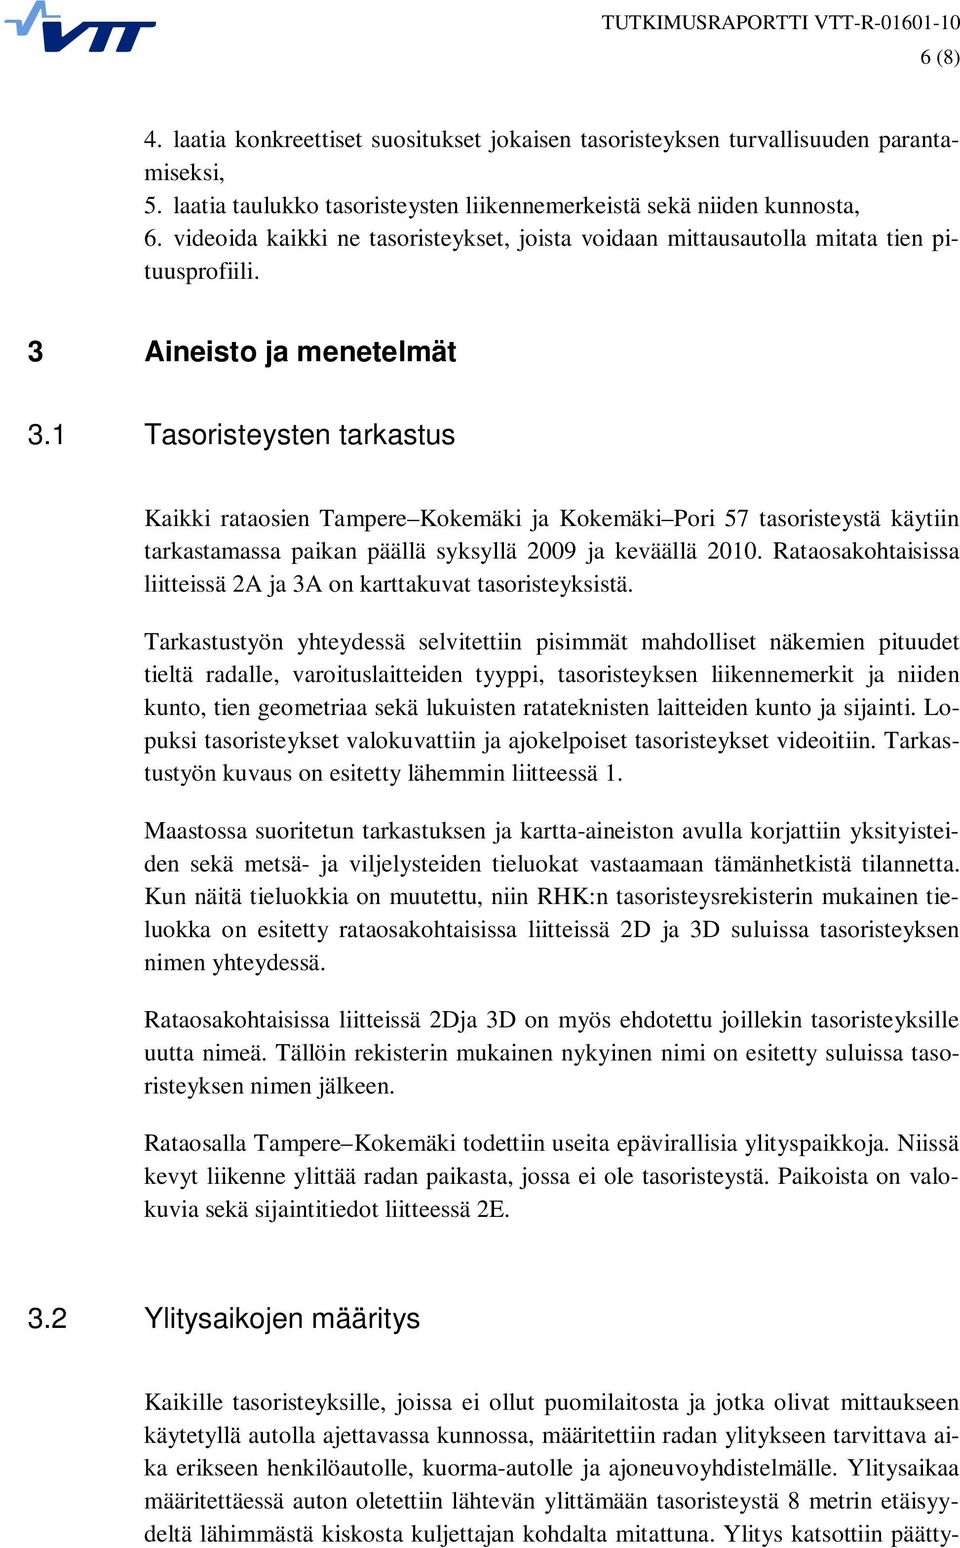 1 Tasoristeysten tarkastus Kaikki rataosien Tampere Kokemäki ja Kokemäki Pori 57 tasoristeystä käytiin tarkastamassa paikan päällä syksyllä 2009 ja keväällä 2010.